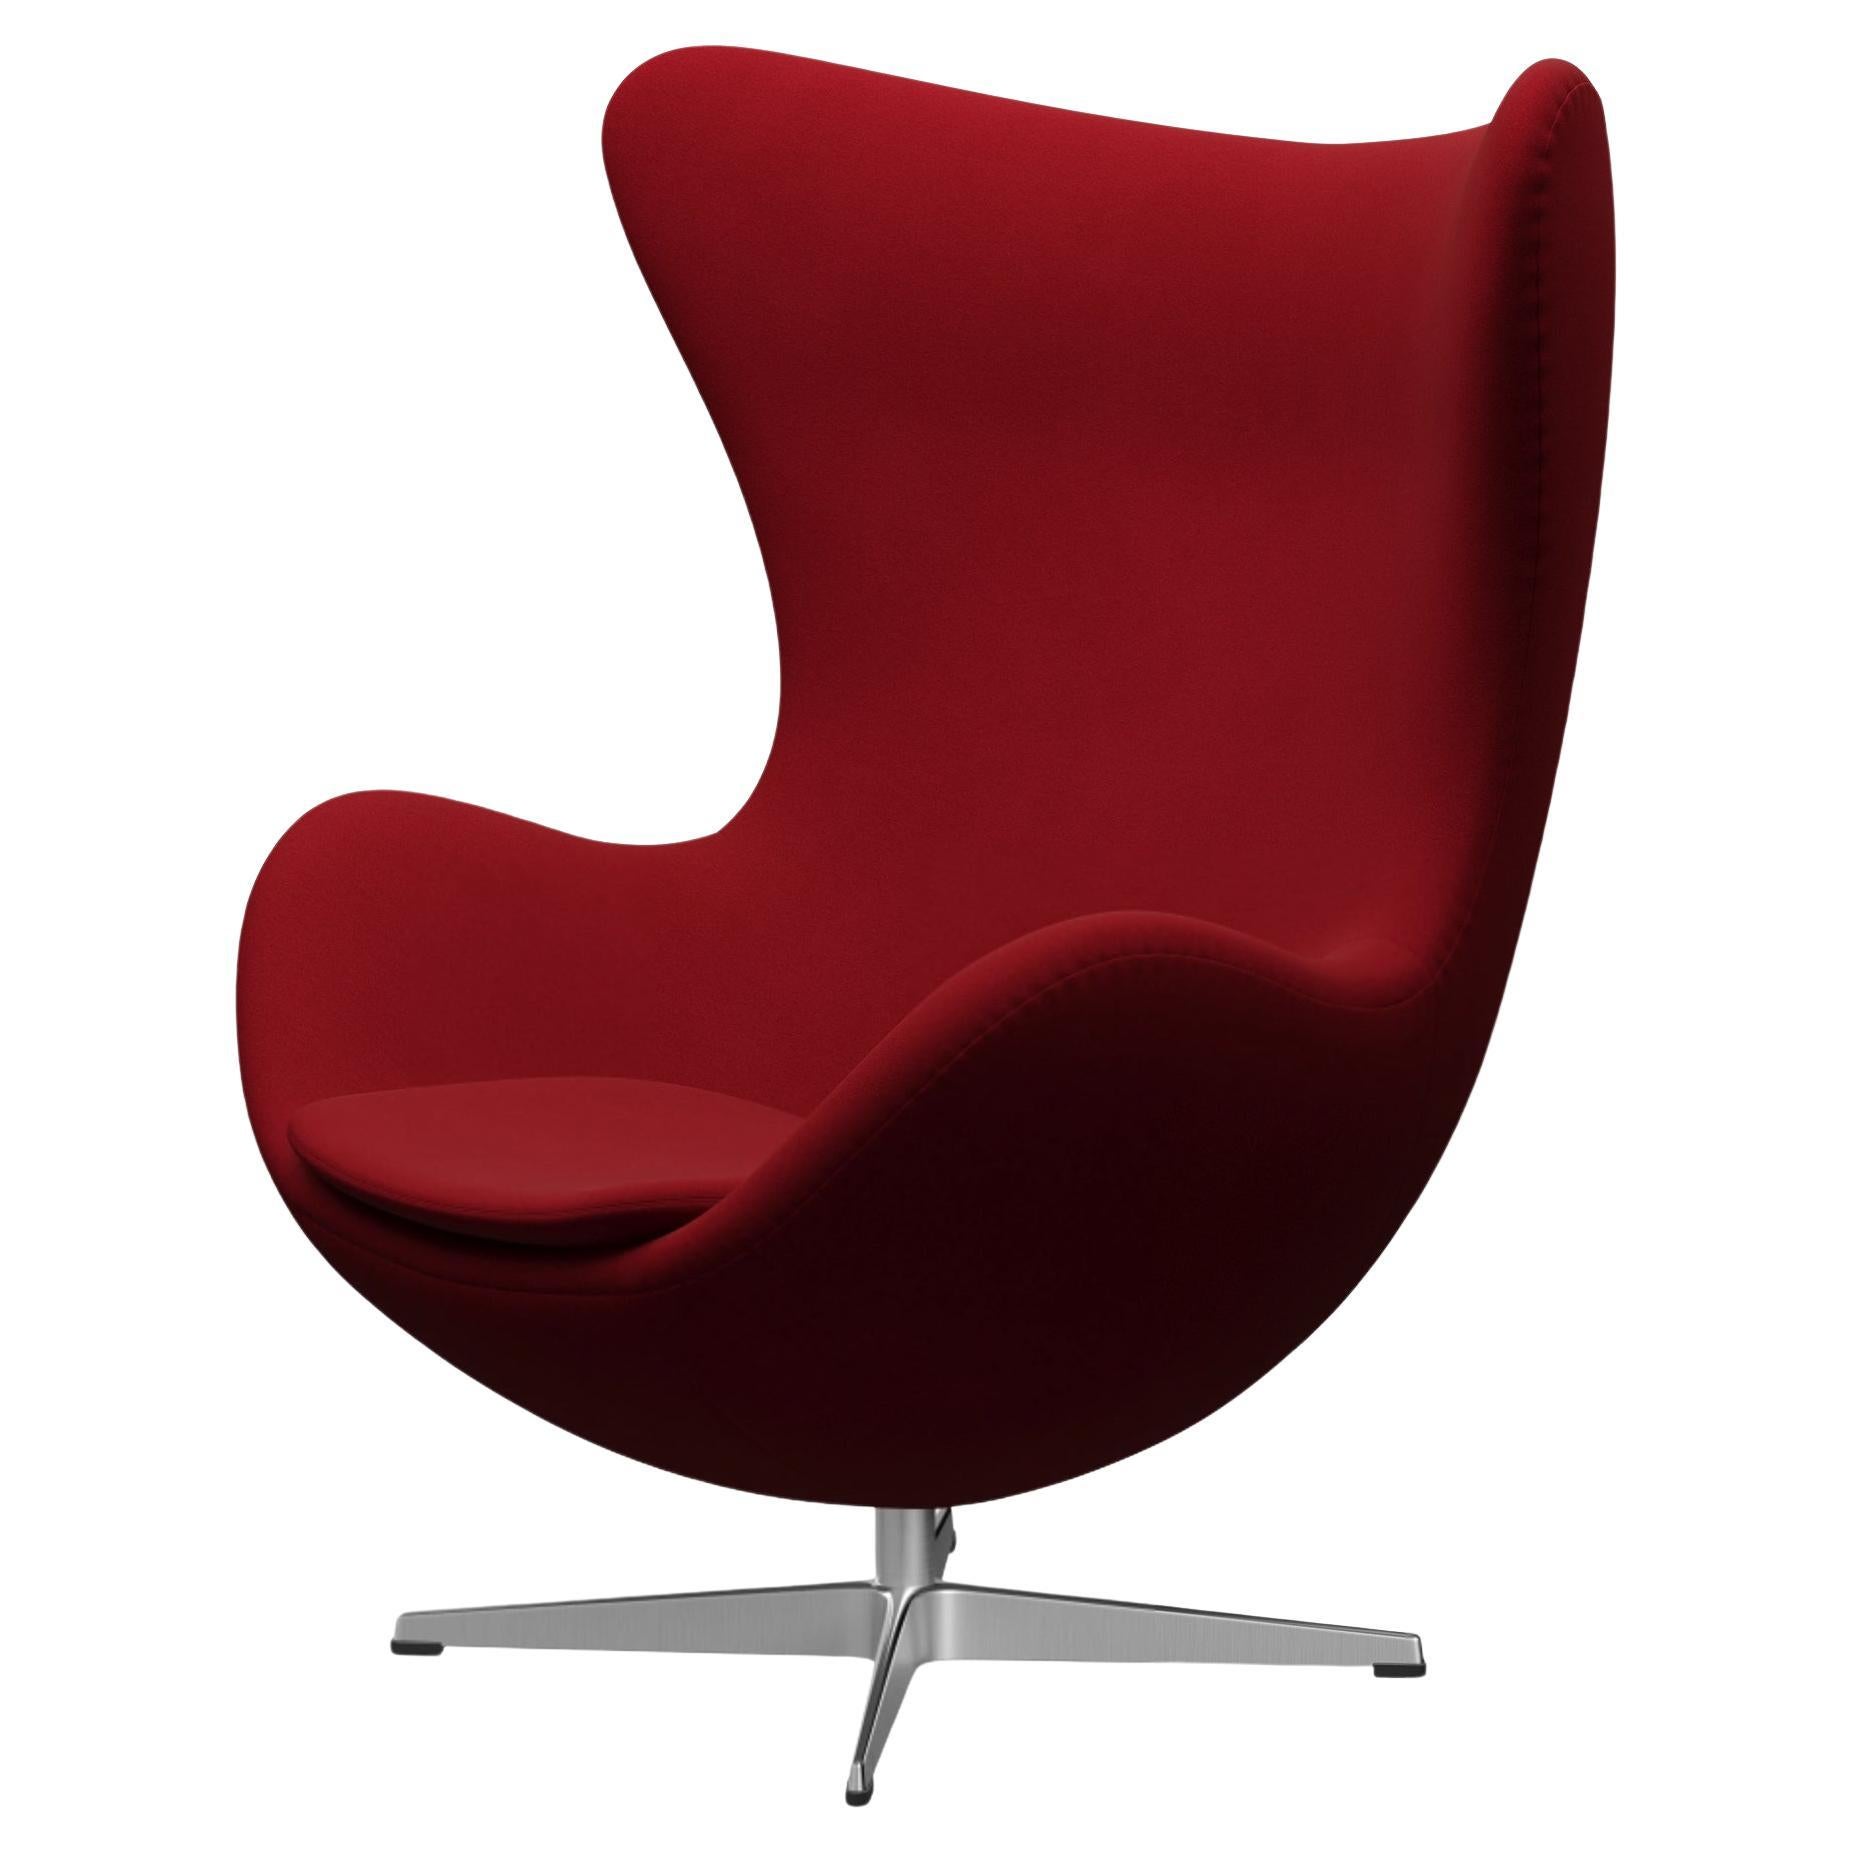 Arne Jacobsen 'Egg' Chair for Fritz Hansen in Fabric Upholstery (Cat. 3) For Sale